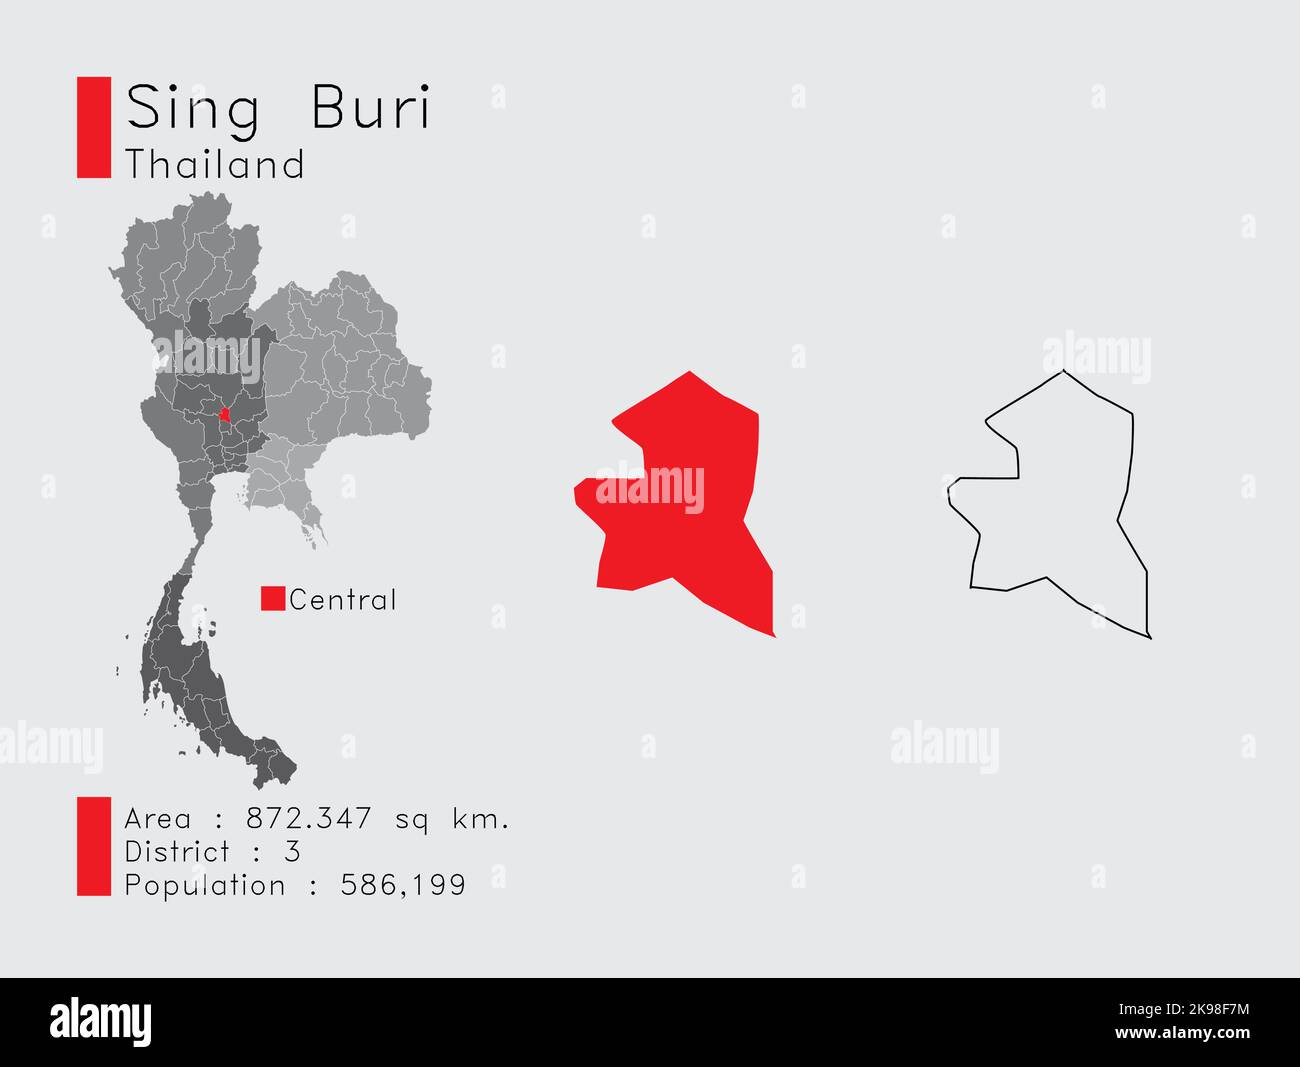 Una serie di elementi infografici per la posizione della Provincia Sing Buri in Thailandia. E la popolazione e il profilo del Distretto Area. Vettore con sfondo grigio. Illustrazione Vettoriale